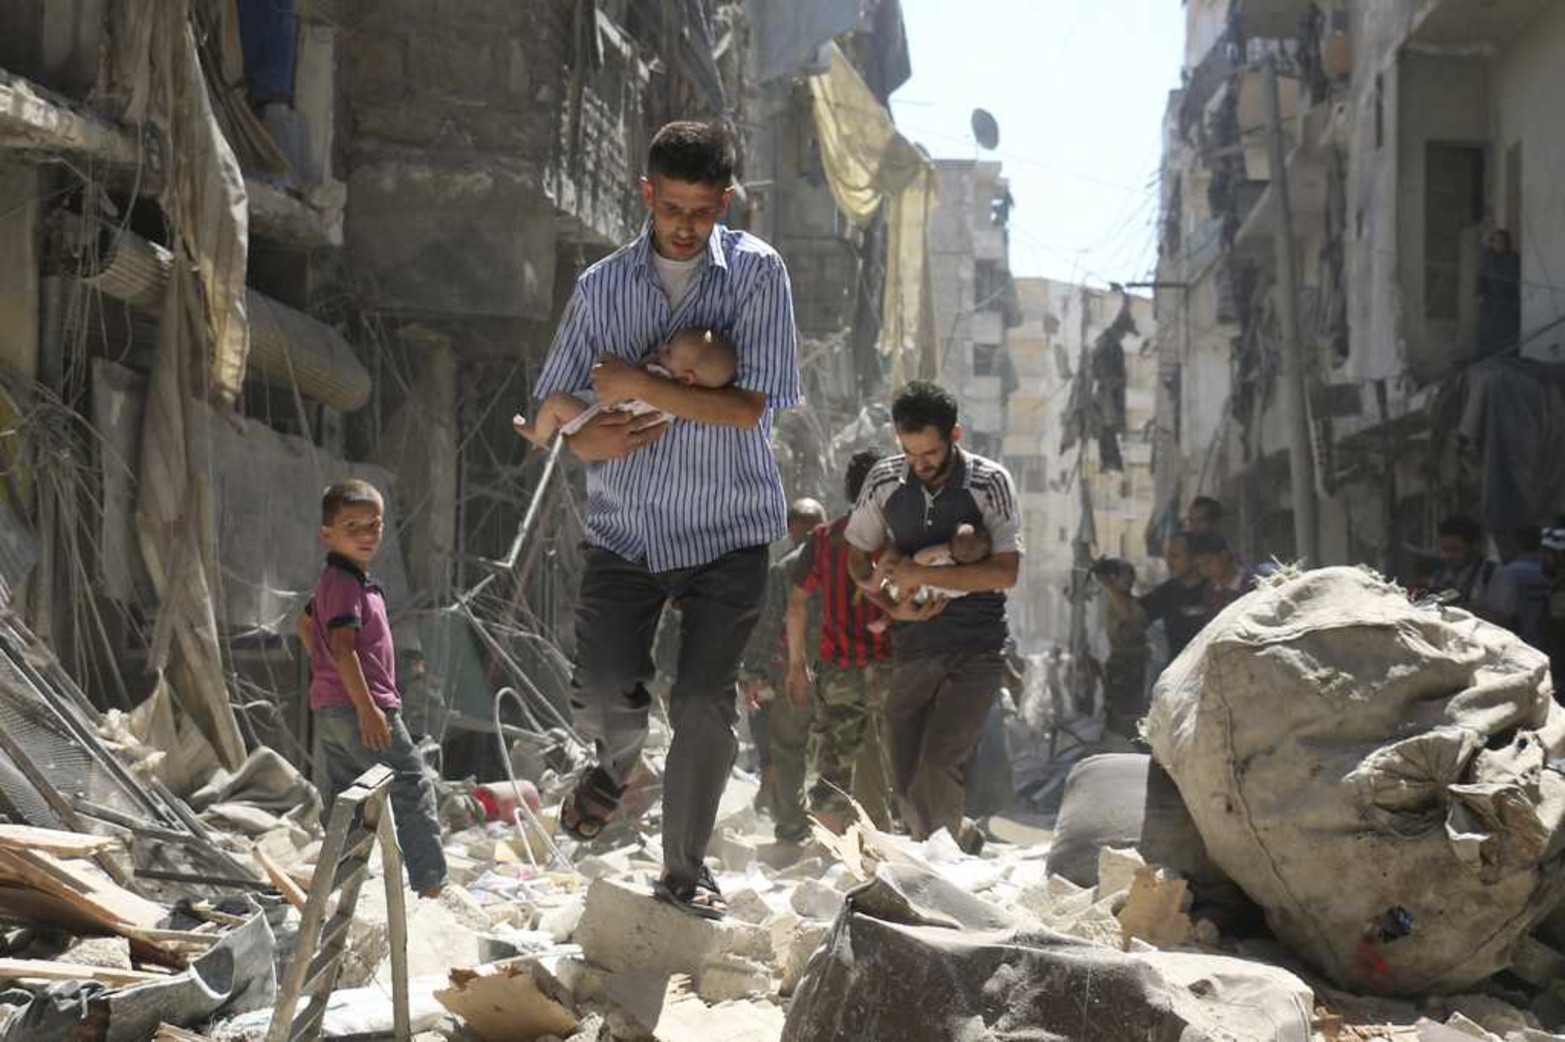 Segundo premio de Historias en la categoría de Noticias de Actualidad, captada por el fotógrafo Ameer Alhalbi de la Agence France-Presse (AFP). La imagen, titulada "Rescued From the Rubble", muestra a dos hombres sirios mientras rescatan a dos bebés de una zona destruída tras un bombardeo en Alepo, Siria, el 11 de septiembre de 2016.